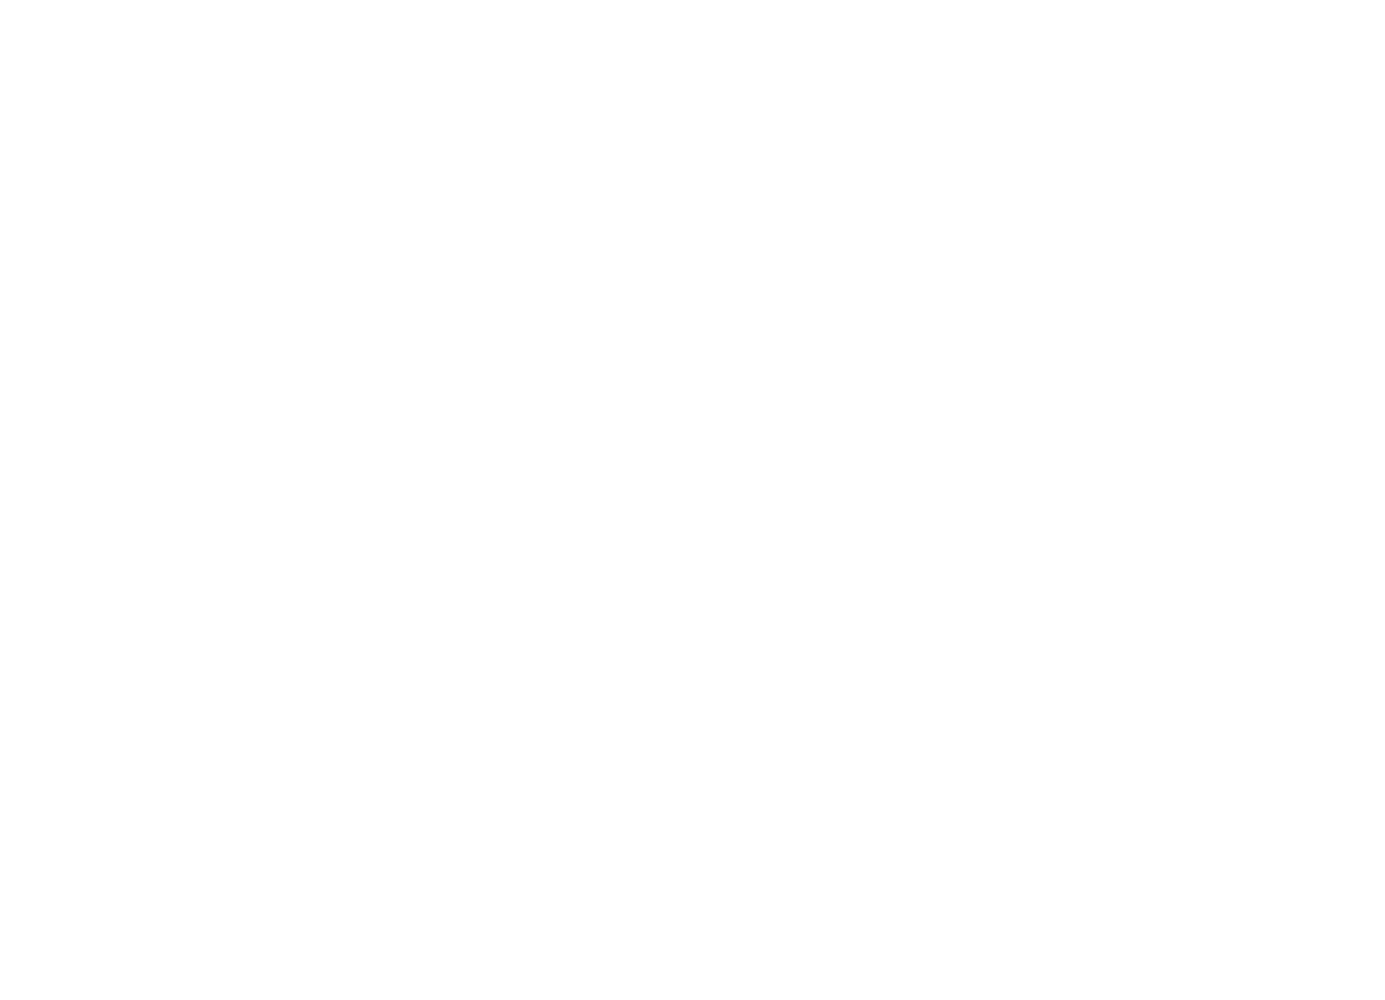 Chicago Abortion Fund - IL